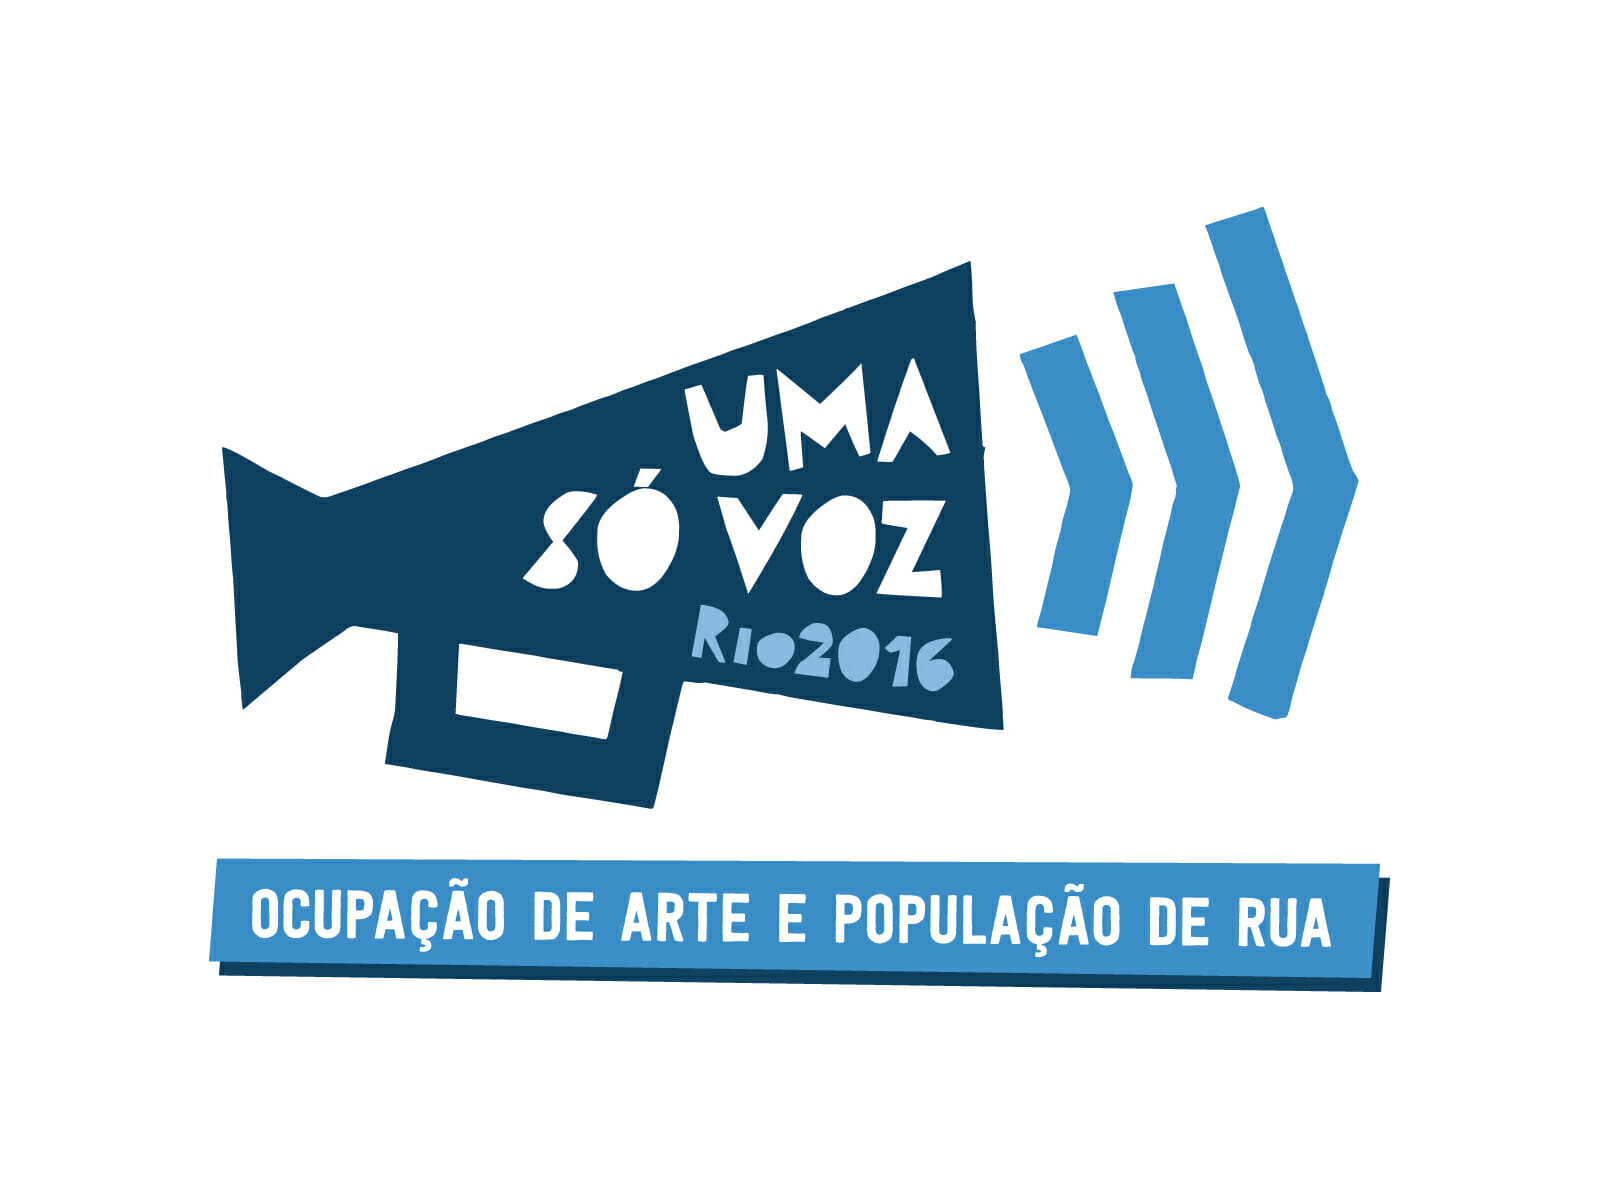 Uma_So_Voz logo